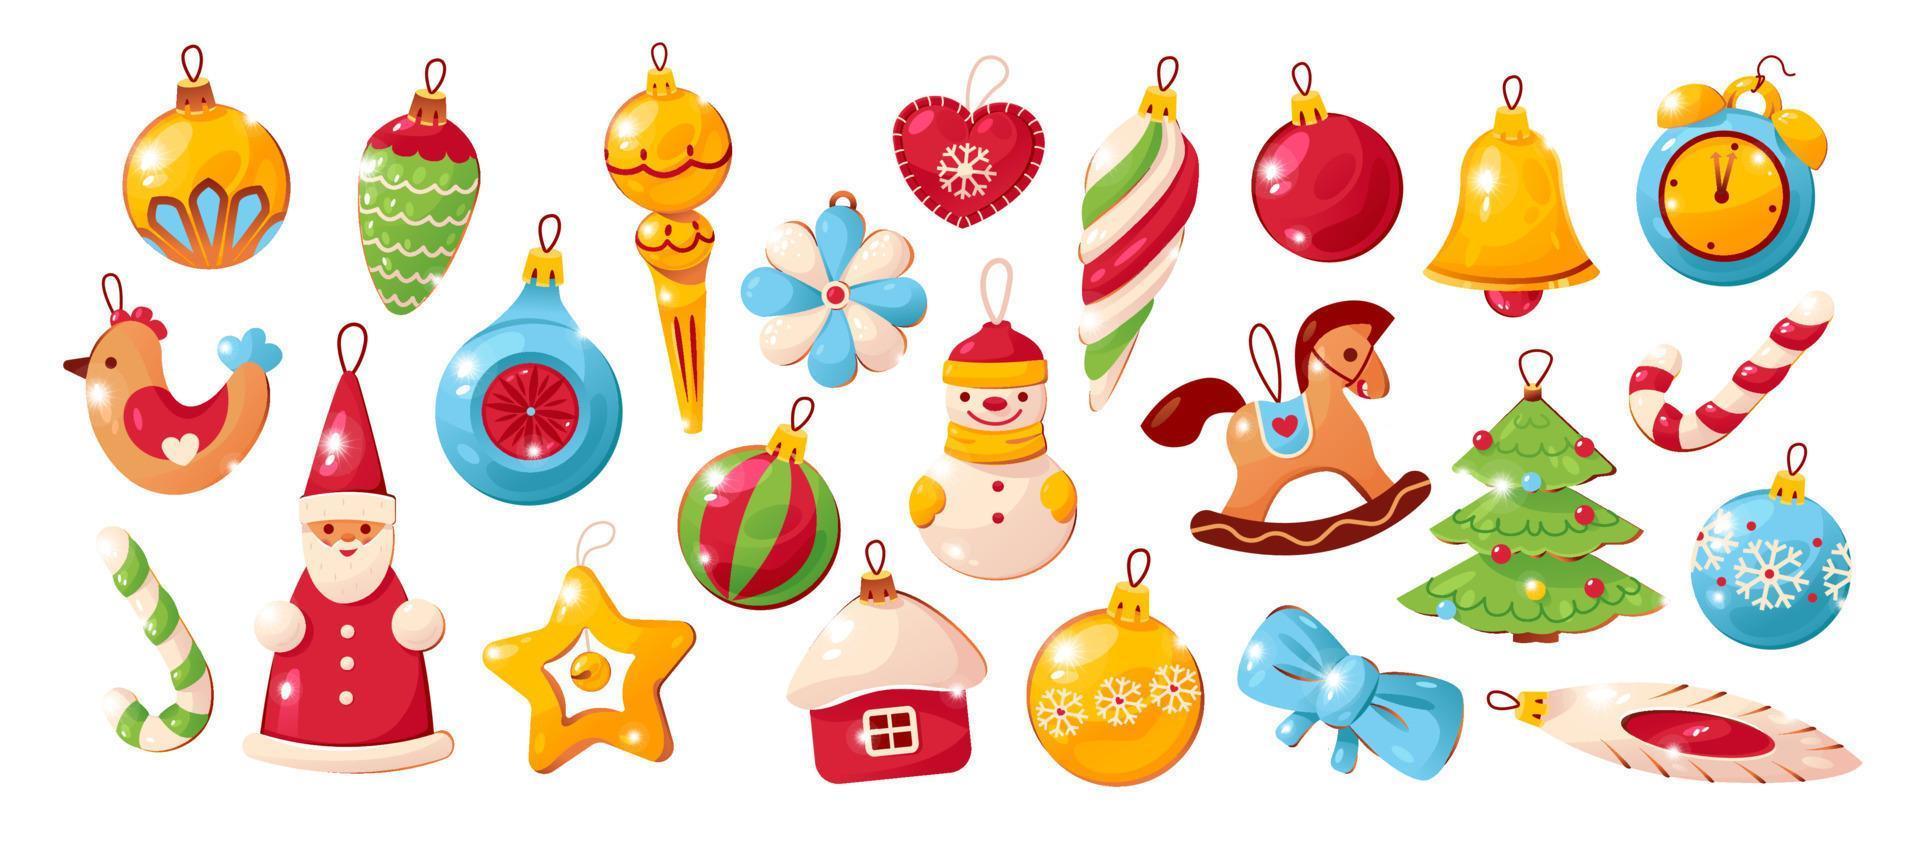 adornos para árboles de navidad. juguetes decorativos suspendidos en cordones. accesorios navideños tradicionales. ilustración vectorial de dibujos animados vector